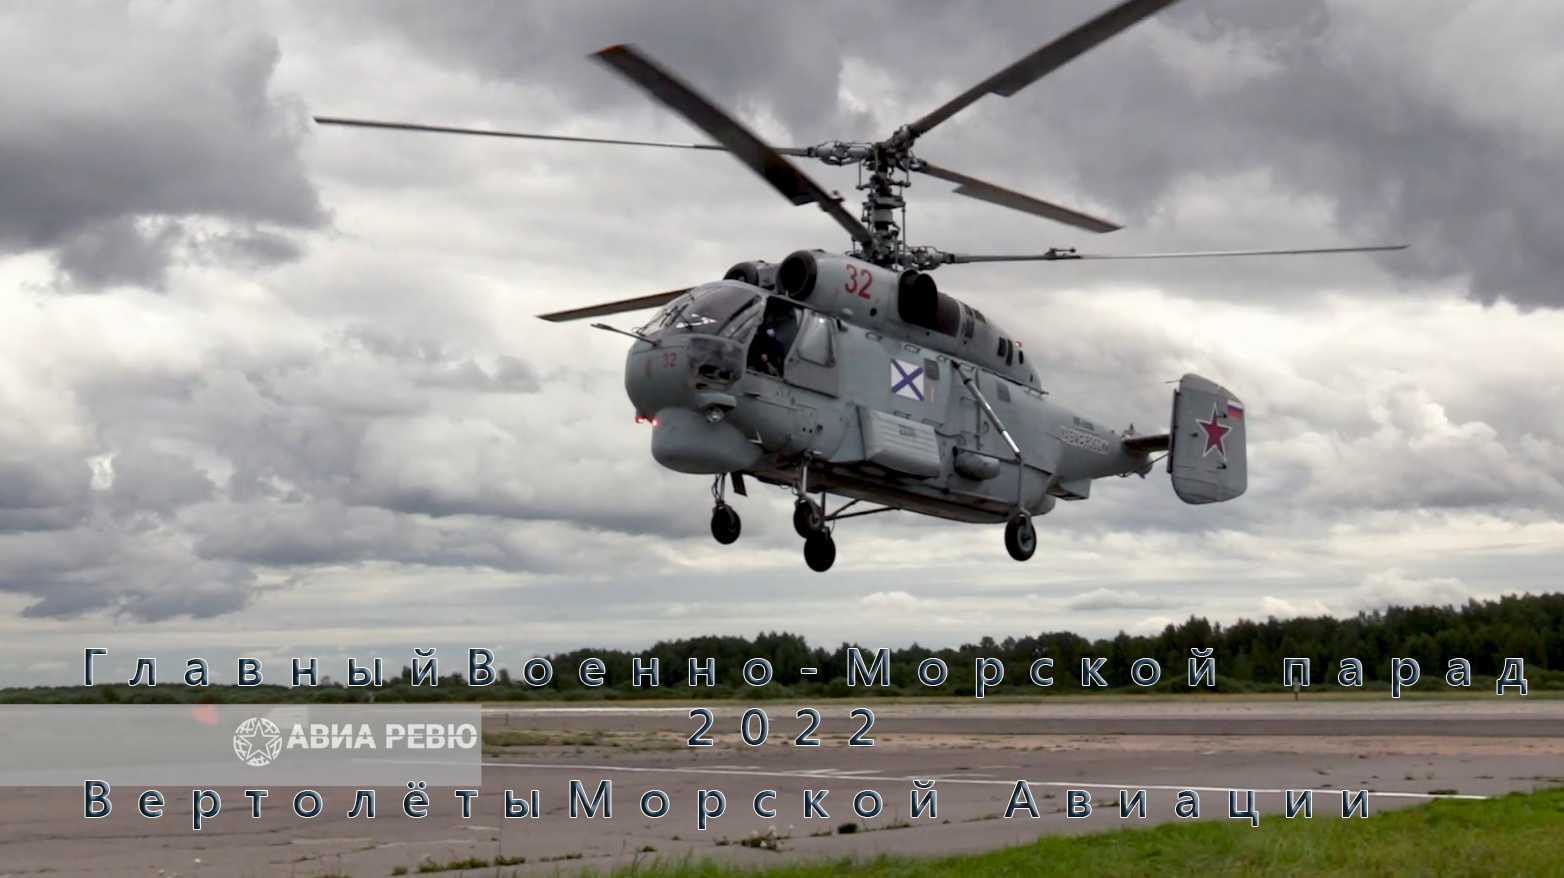 Главный Военно-Морского парад 2022 года. Полёты вертолётов Морской авиации ВМФ России